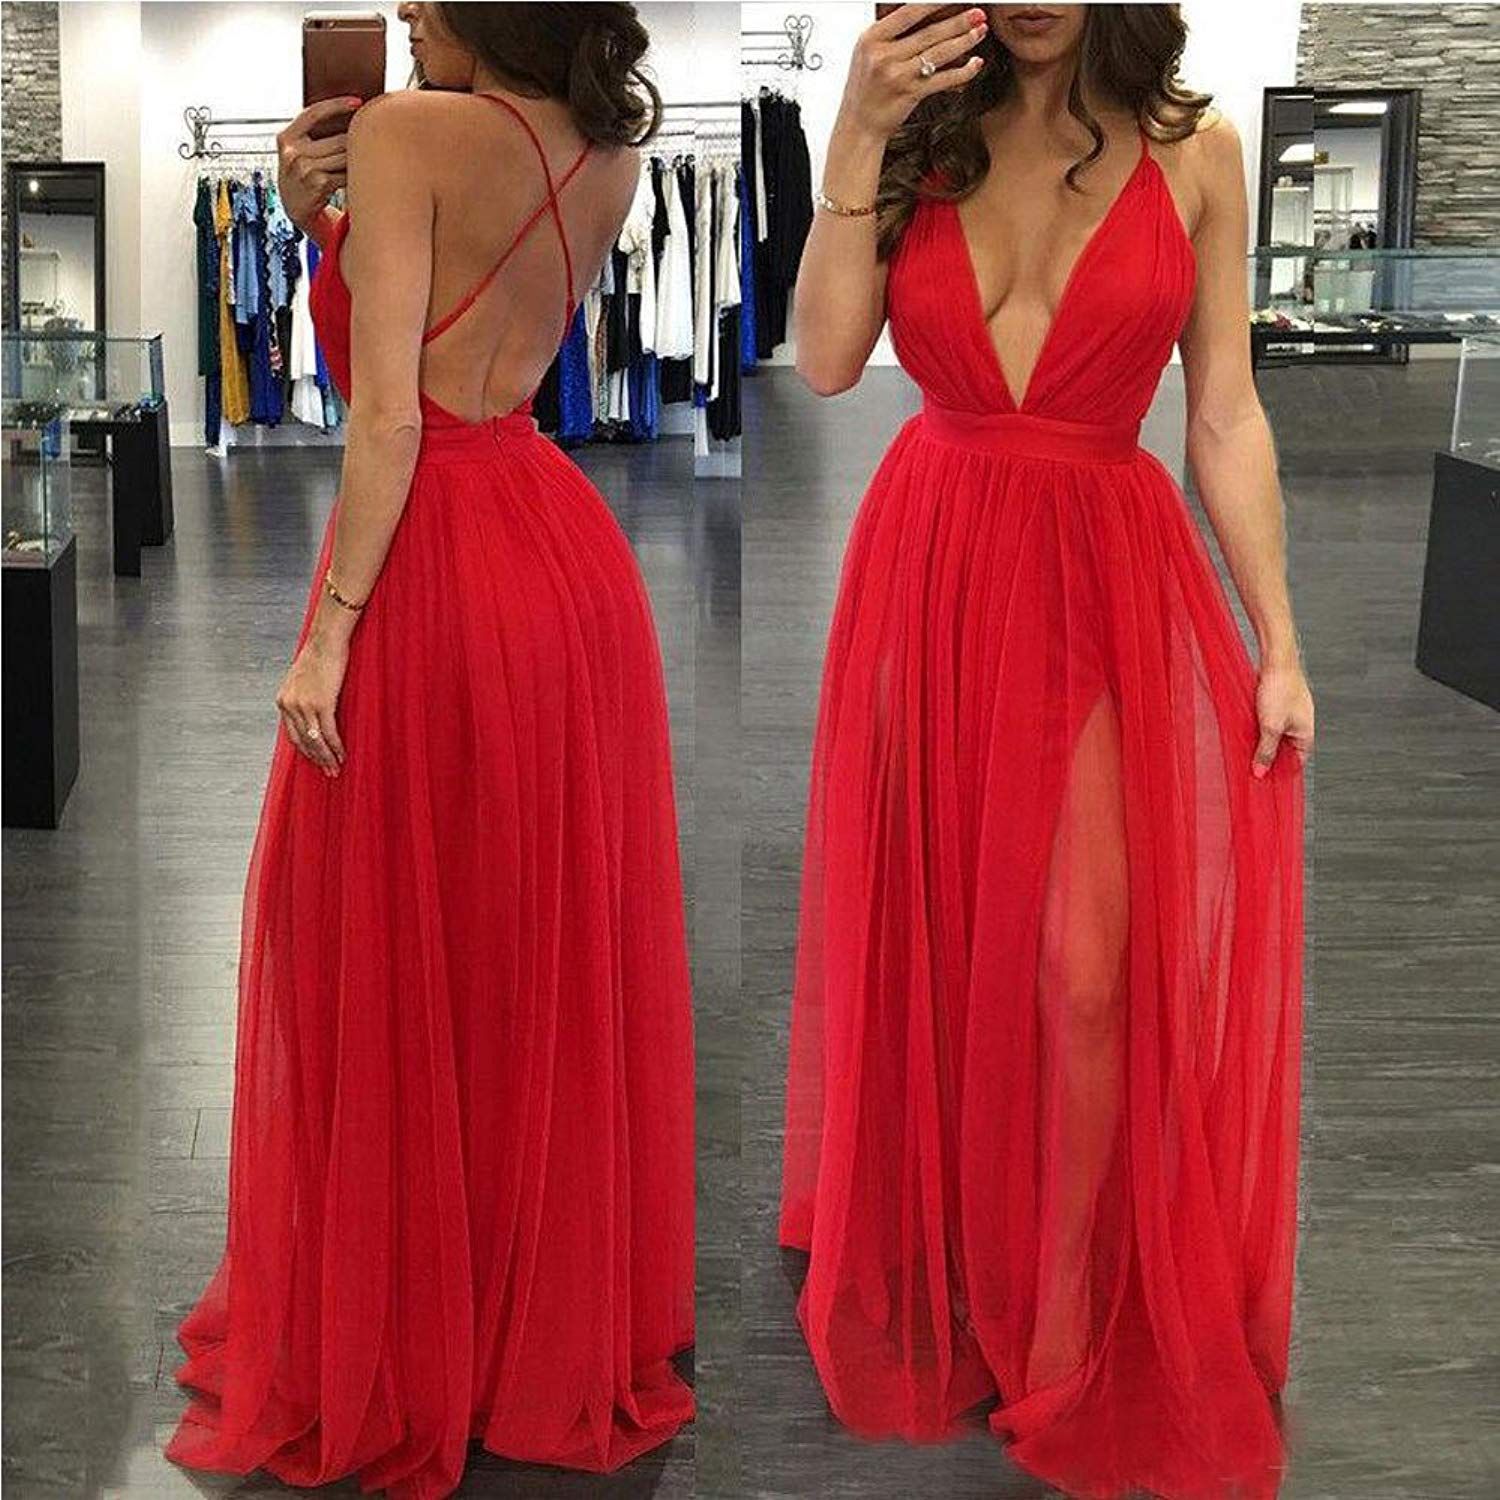 low cut dress online store e4496 398d0